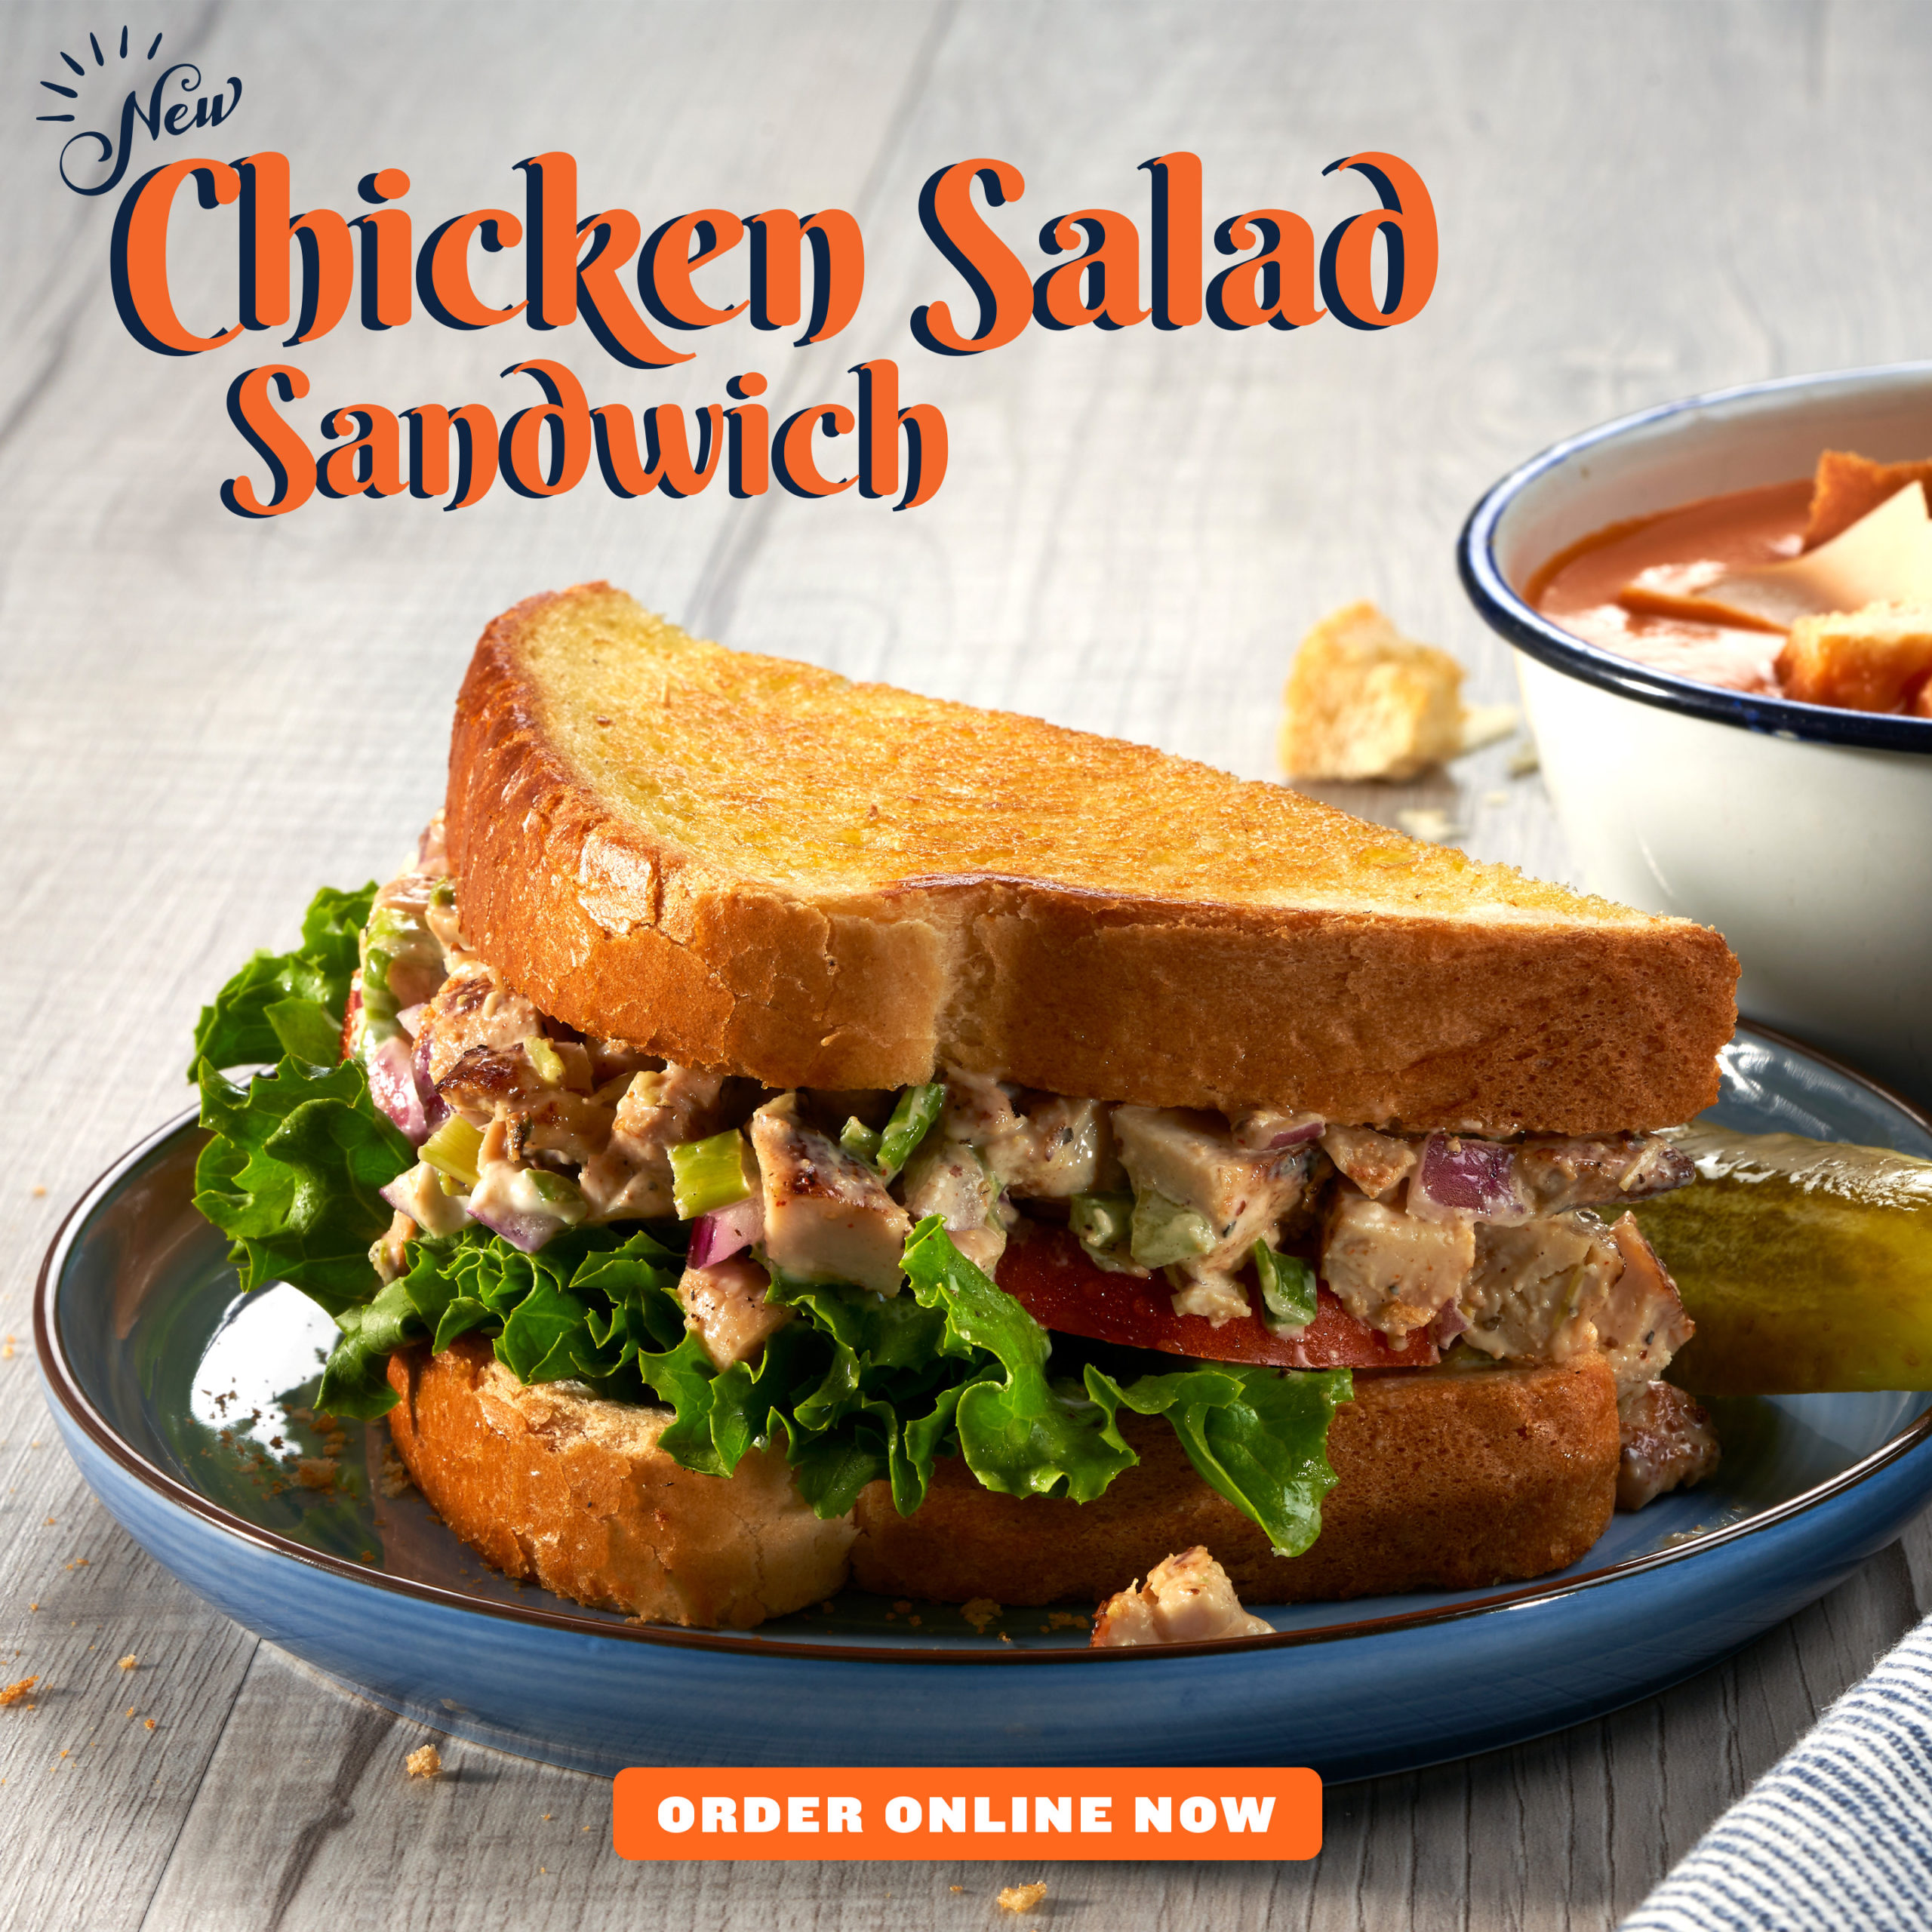 NEW! Chicken Salad Sandwich